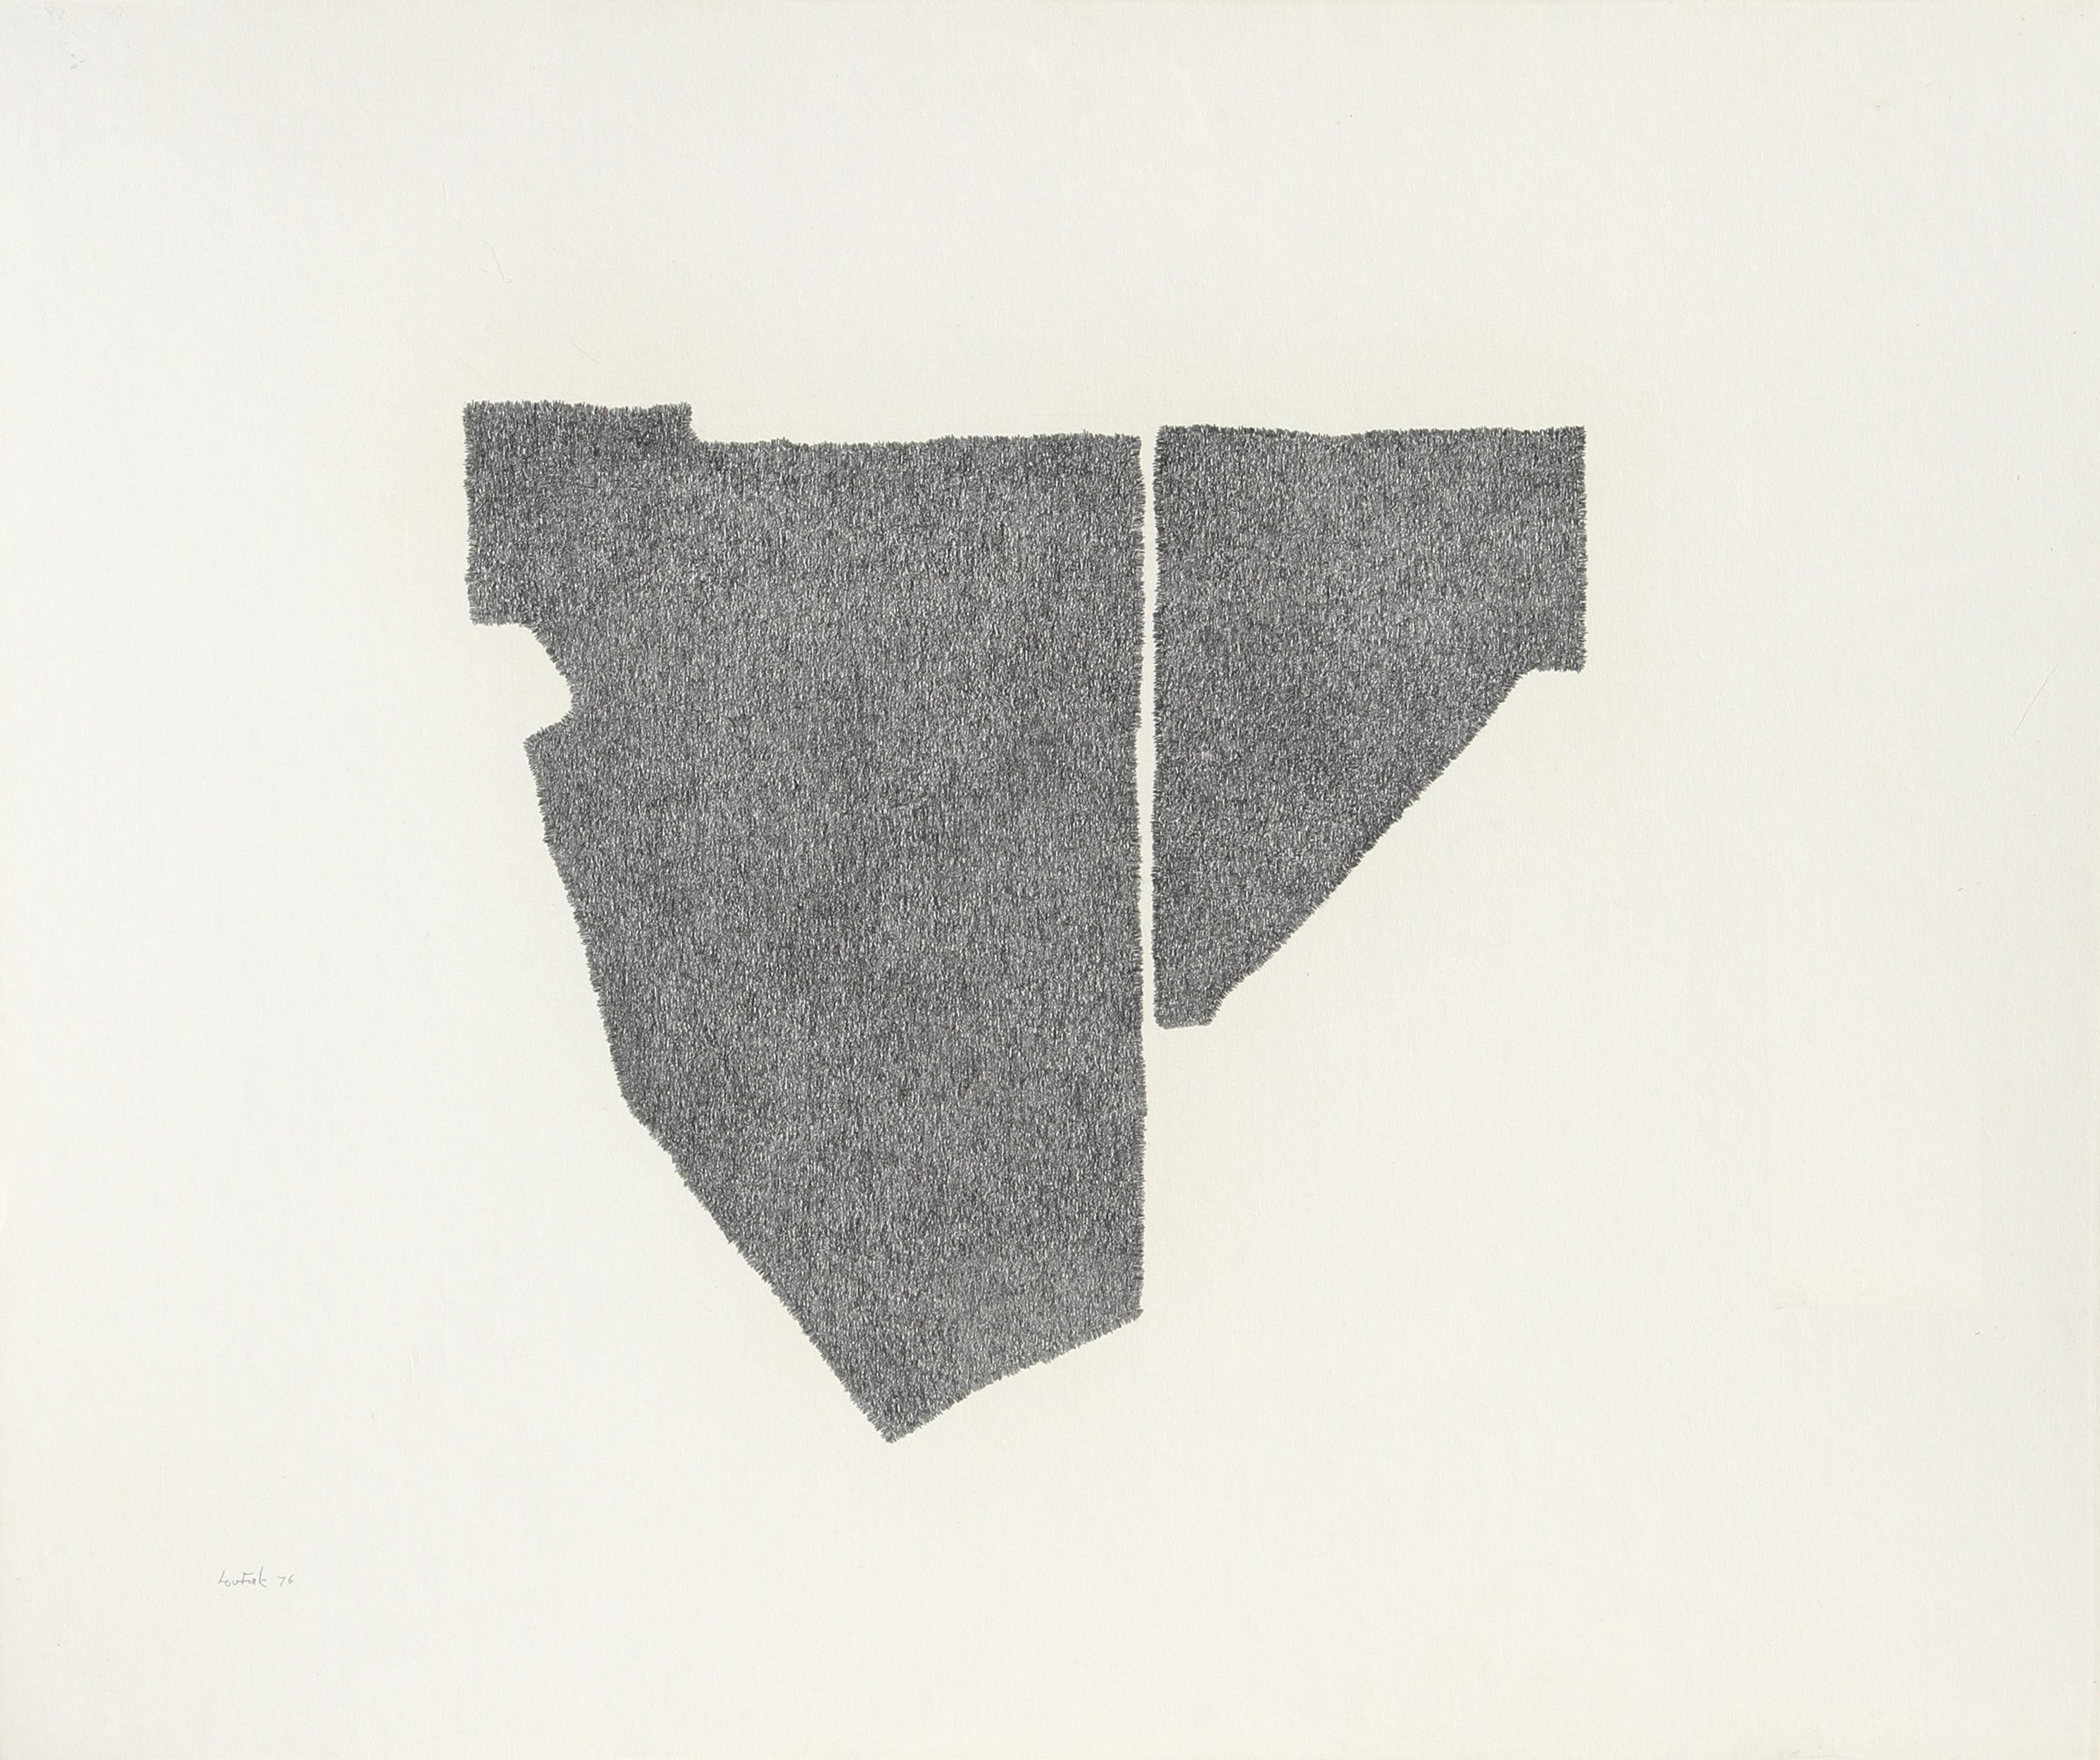 Artiste : Lou Fink
Titre : Bordure de bois
Année : 1976
Médium : Crayon sur papier, signé et daté à gauche.
Taille : 20 in. x 24 in. (50,8 cm x 60,96 cm)